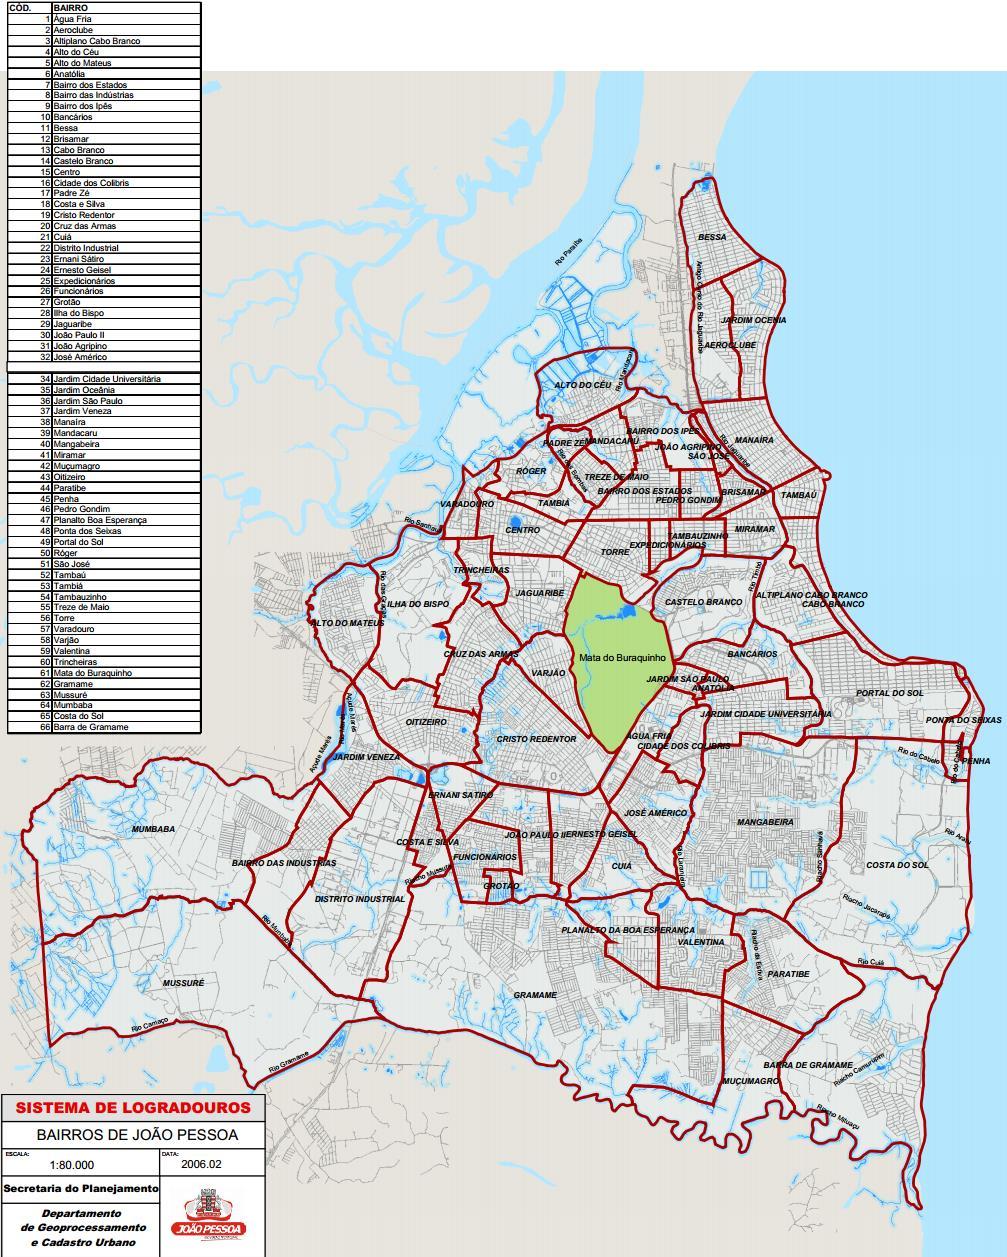 42 importante relembrar, que para as análises, foram usados dois mapas diferentes, um usado até o ano de 2006 com 66 bairros e o outro usando a partir de 2007 com 64 bairros.